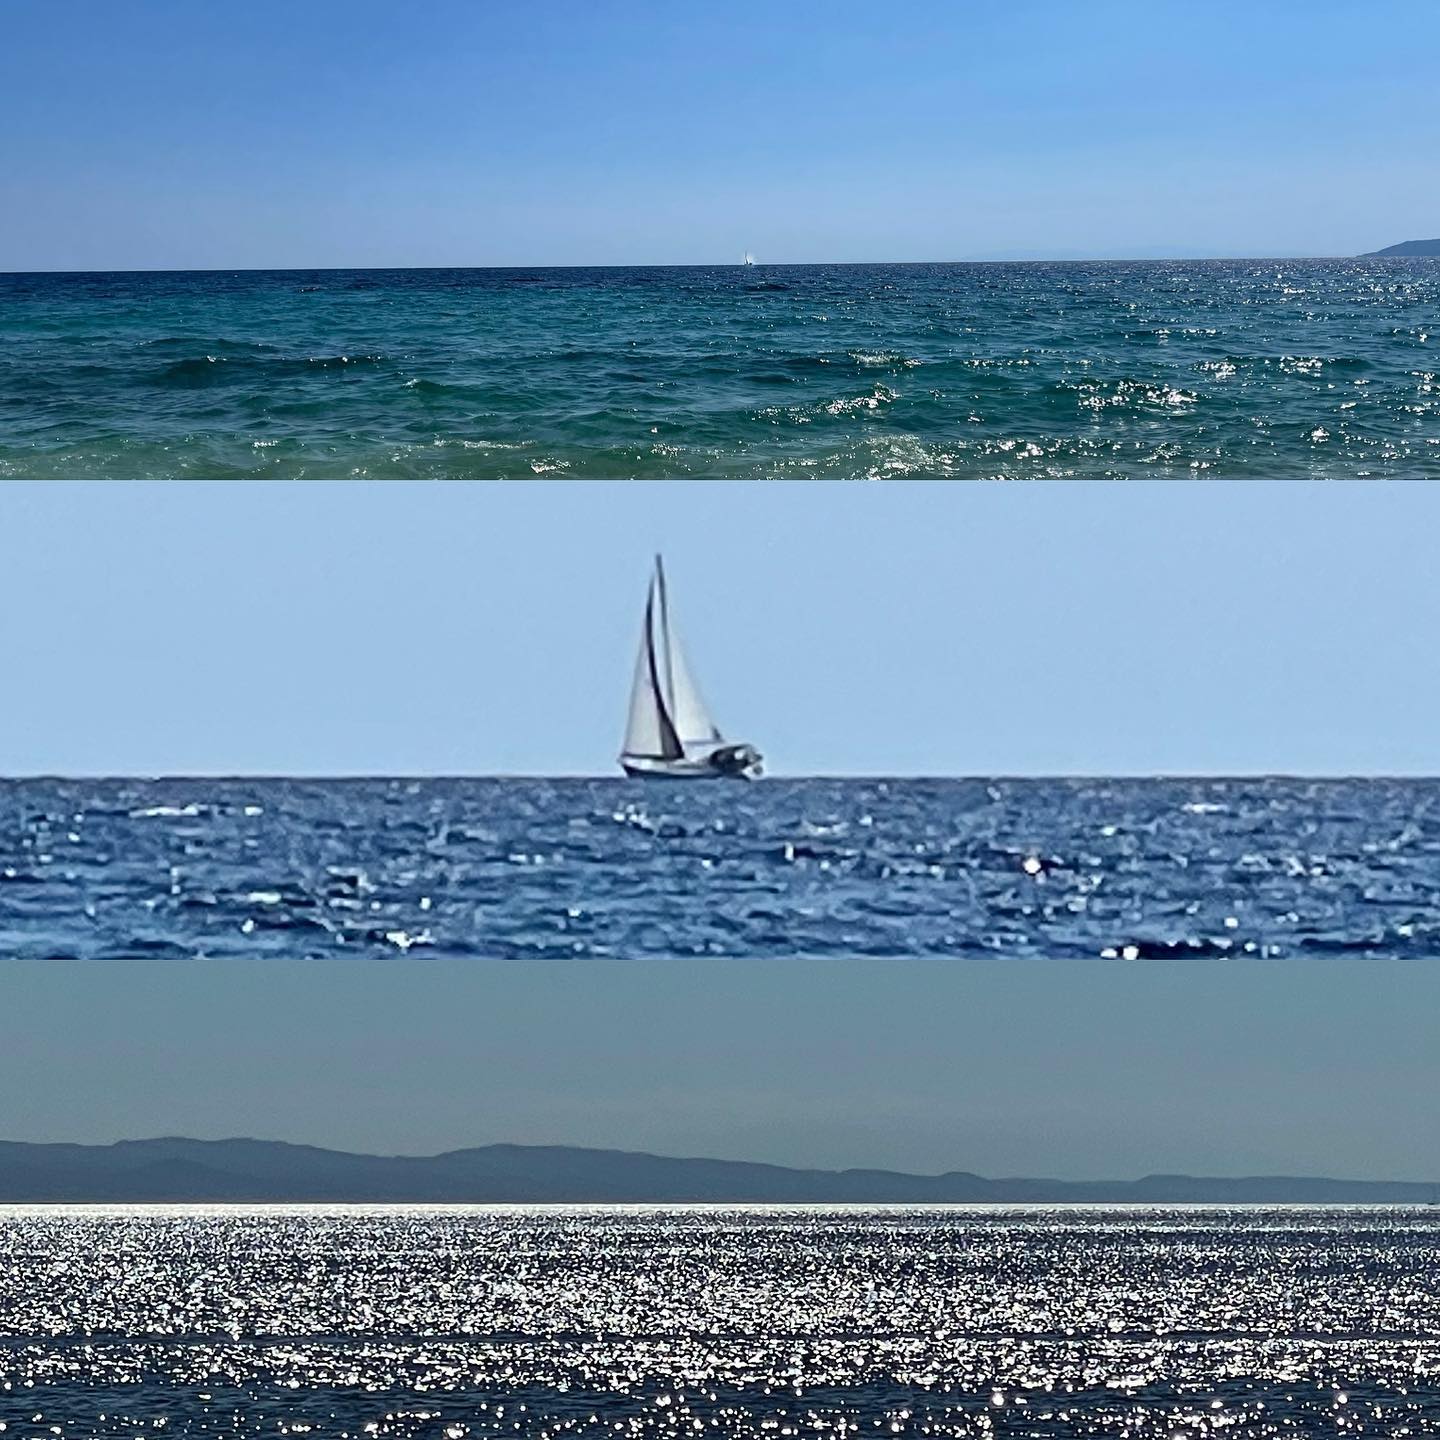 Wär grad gern noch mehr am Meer 🌊, als wieder vorm Bildschirm 👩🏻‍💻.
#byeholidays #babaurlaub #homeoffice #meer #sea #holiday #griechenland #greecestagram #greece #ellada #urlaub